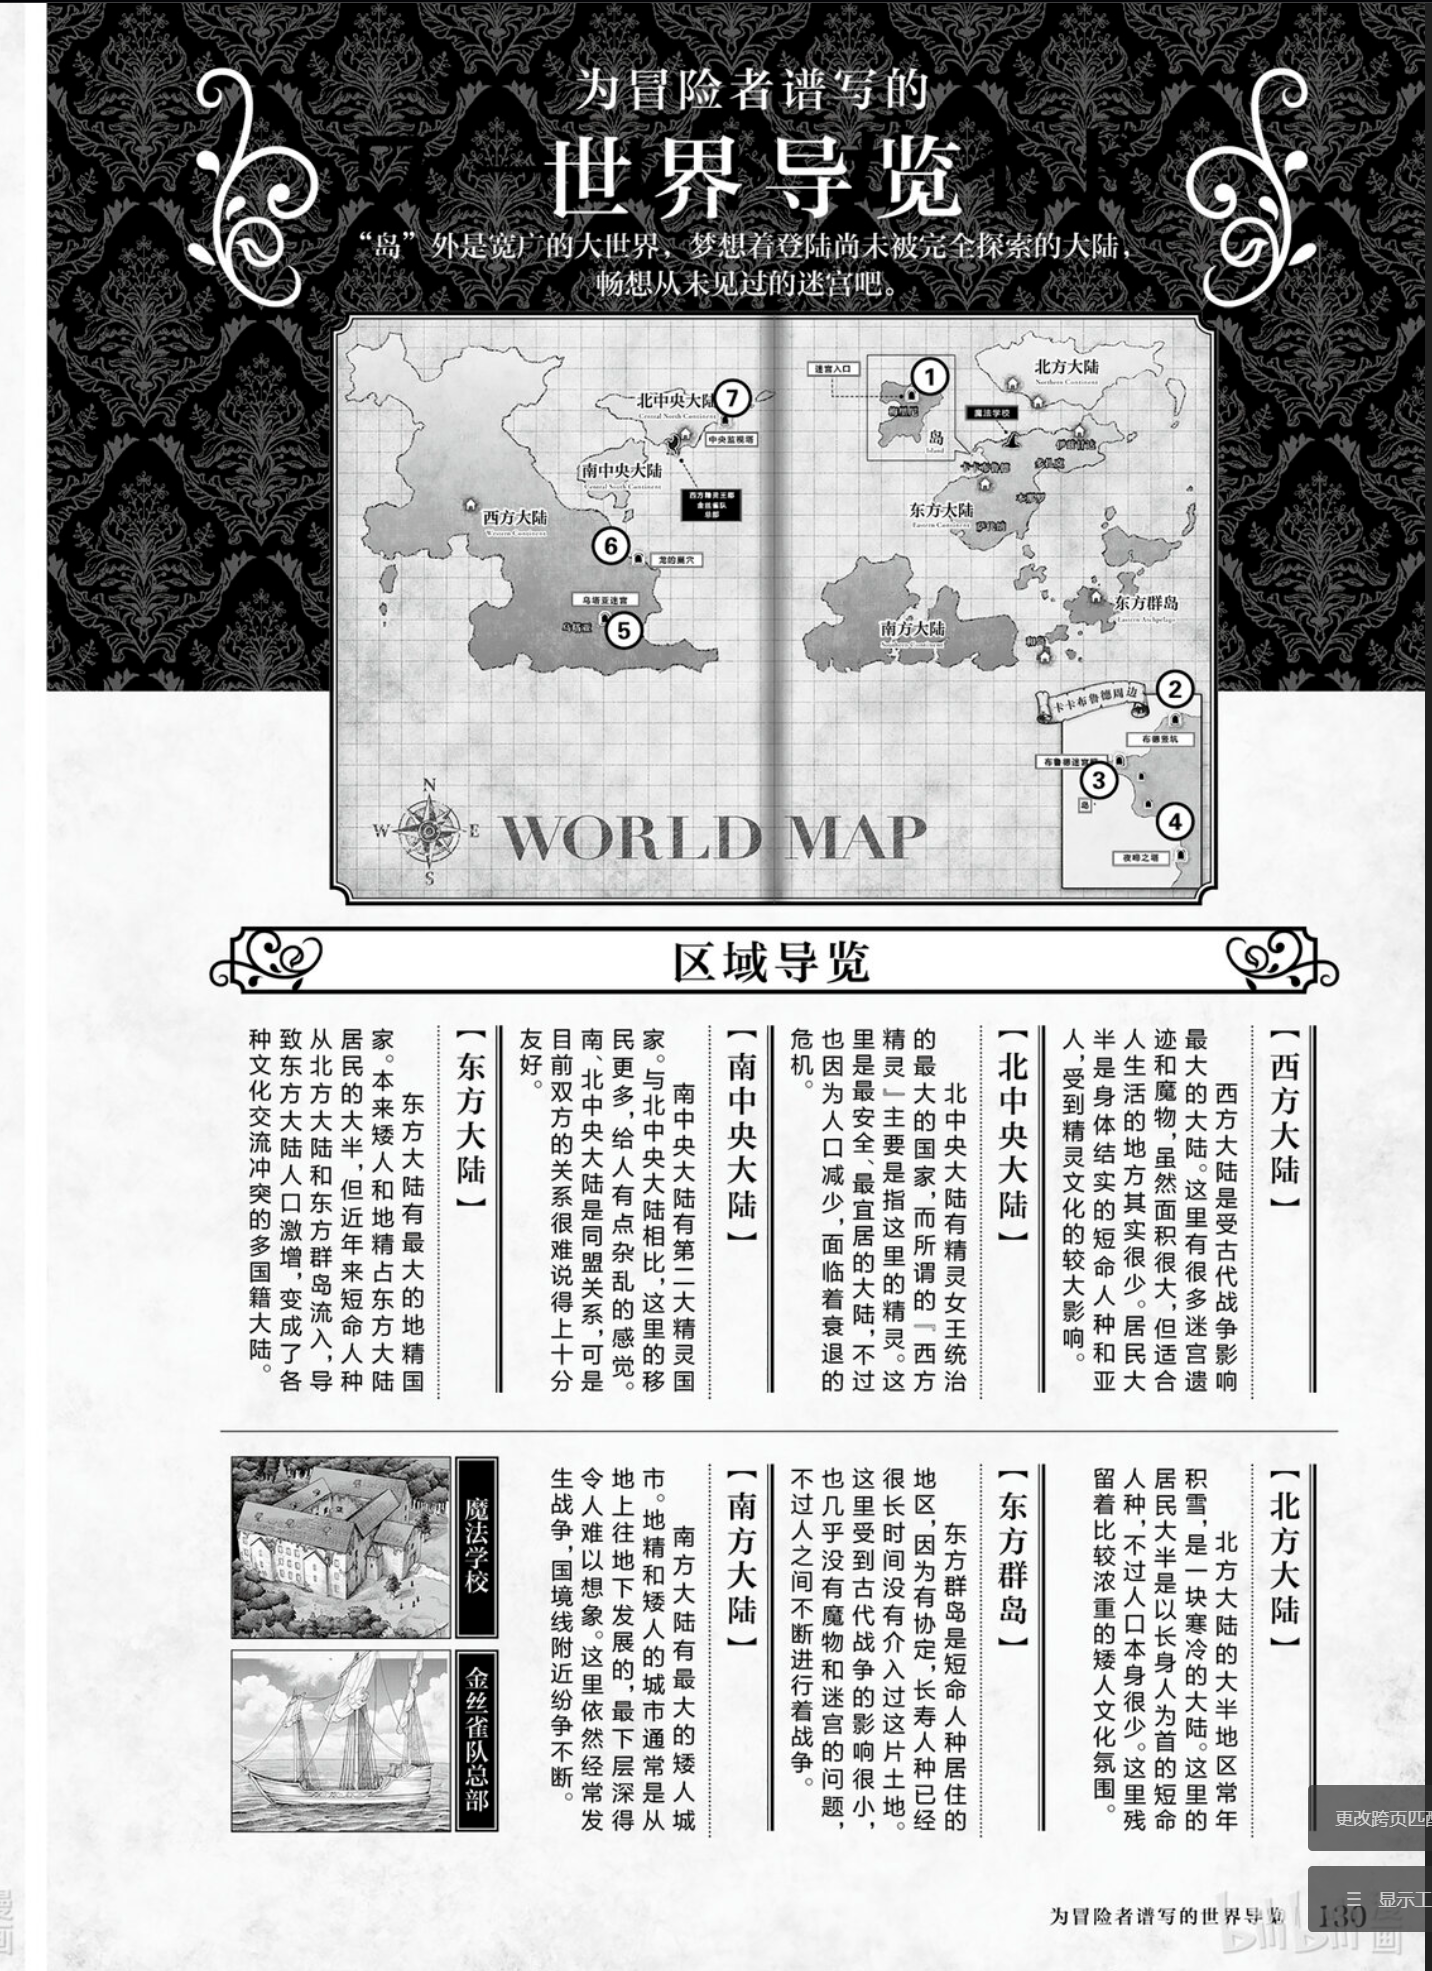 《迷宫饭》系列的世界地图，仅以此为例，想表达在此阶段可以开始考虑世界各地的状态，比如是处于局势紧张的状态、或是交战的状态等等